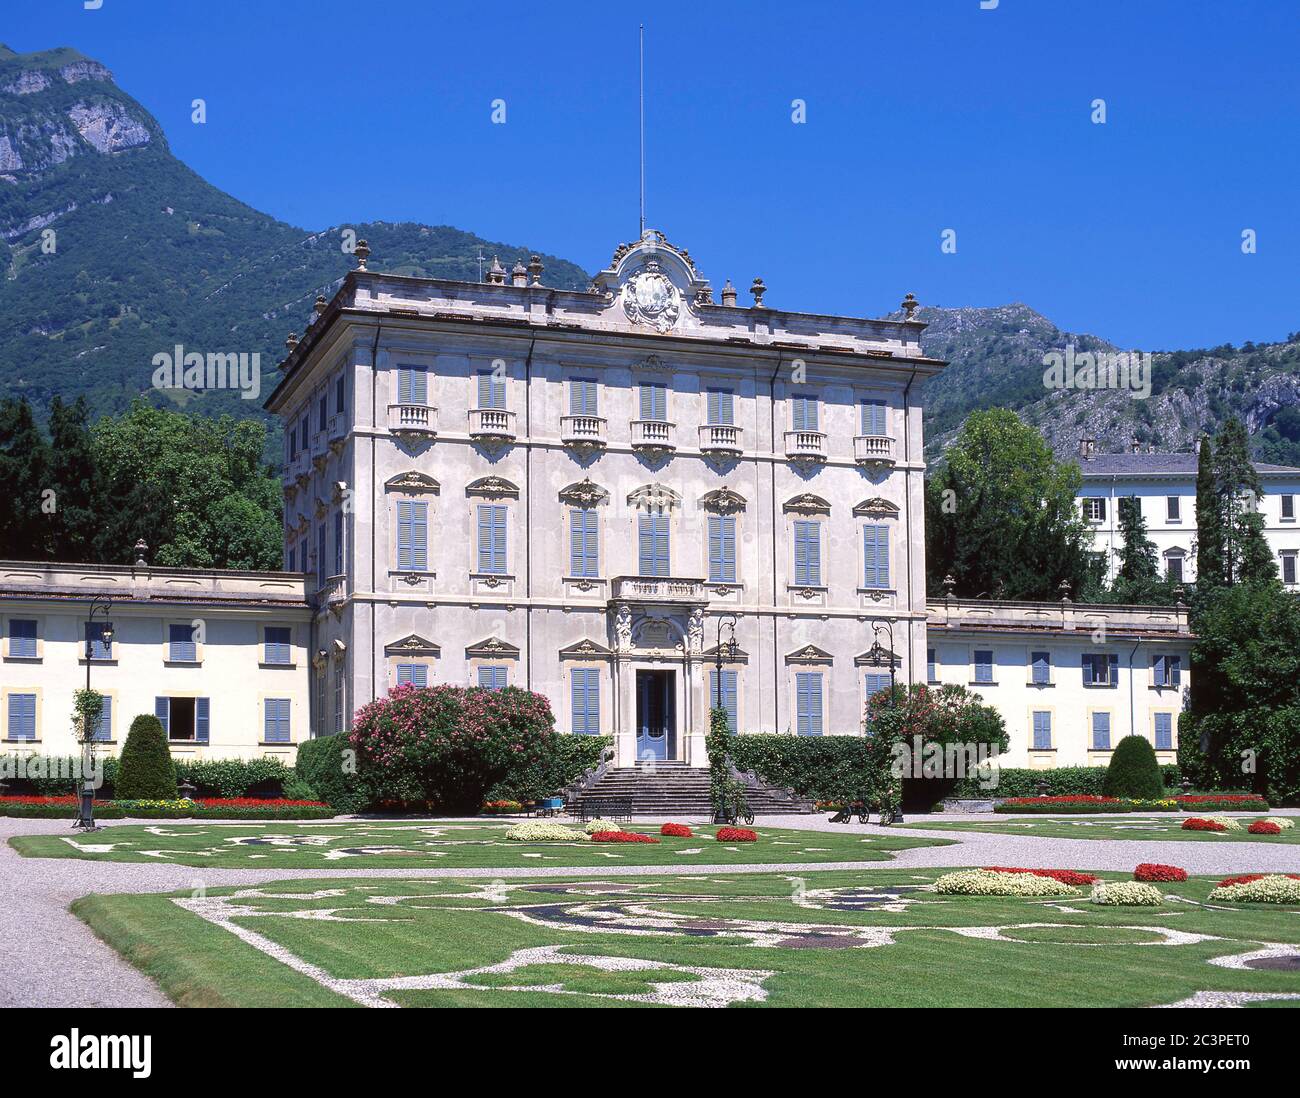 Villa Carlotta am Ufer des Comer Sees, Tremezzo, Provinz Como, Lombardei Region, Italien Stockfoto